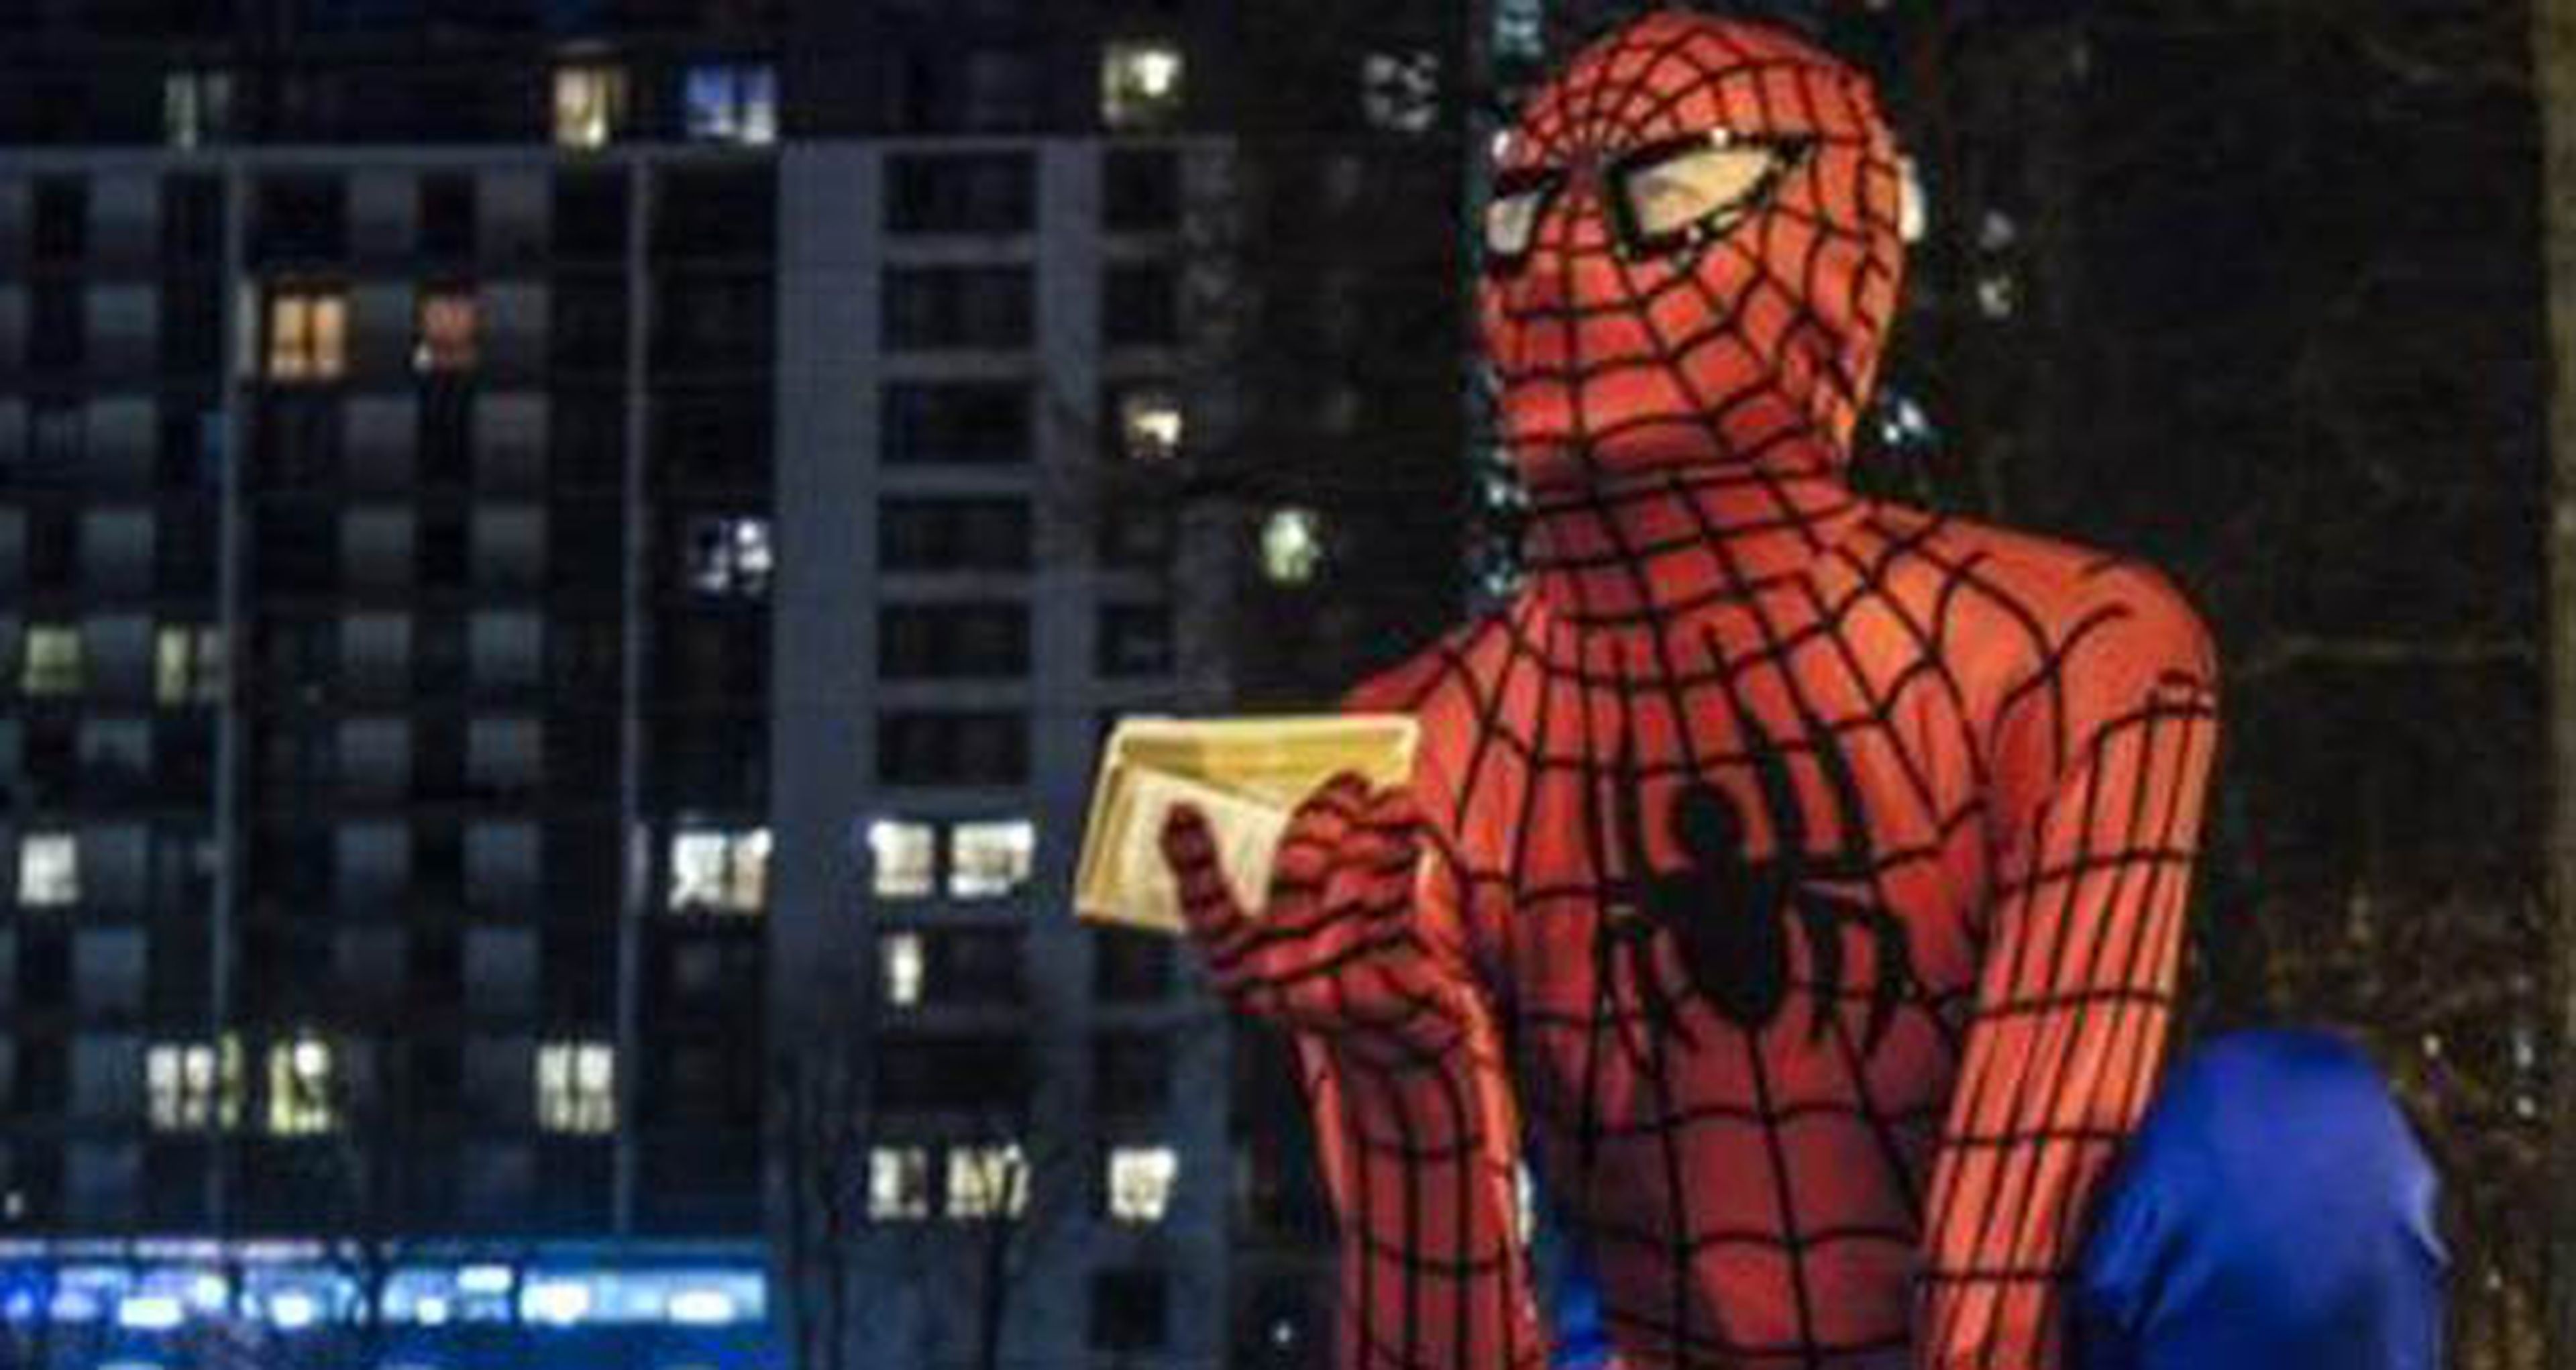 Spider-man ayuda a los sintecho, repartiendo alimentos